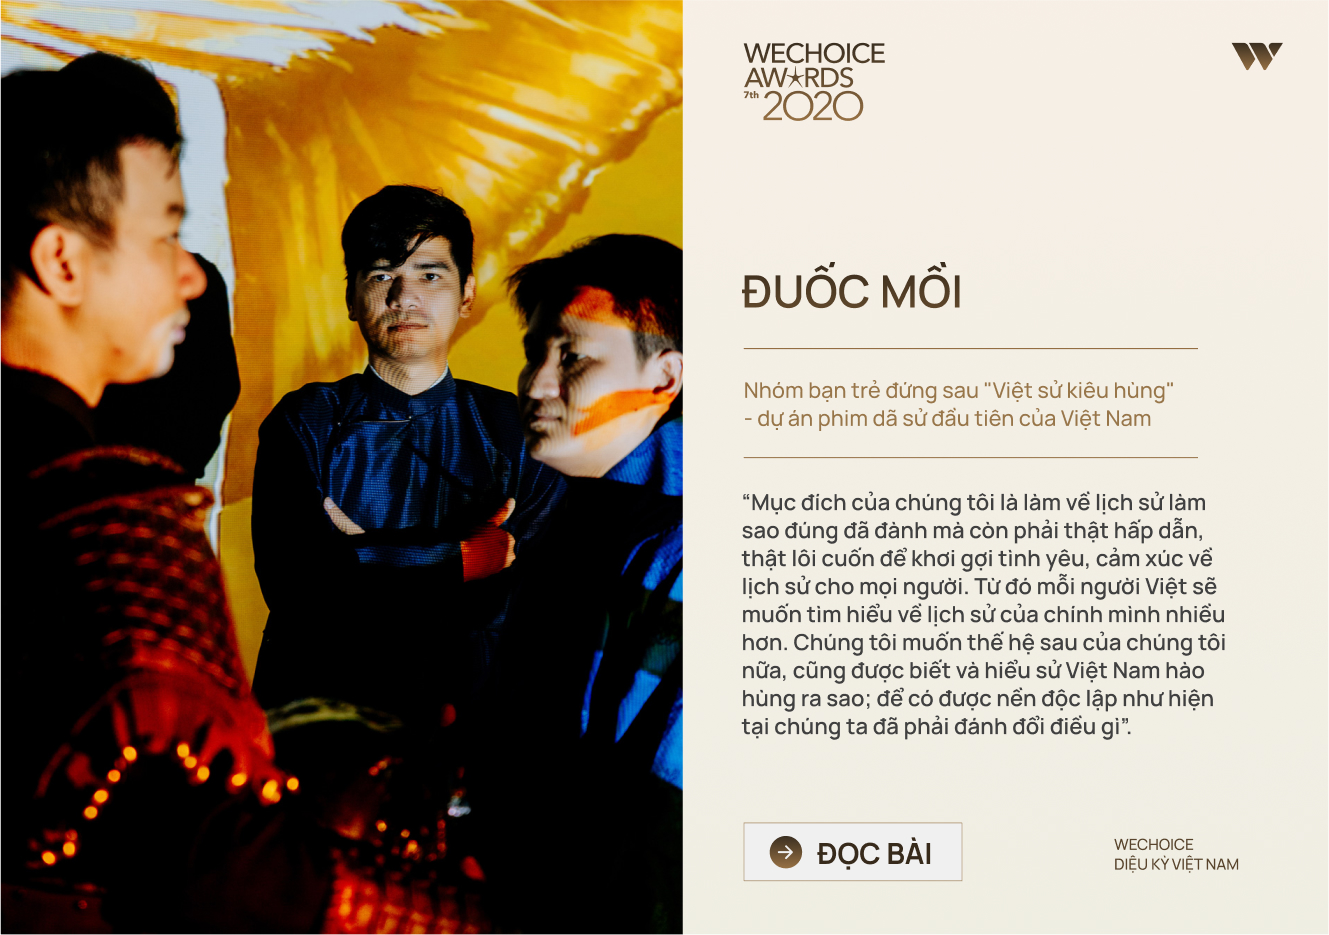 20 đề cử nhân vật truyền cảm hứng của WeChoice Awards 2020: Những câu chuyện tạo nên Diệu kỳ Việt Nam - Ảnh 19.